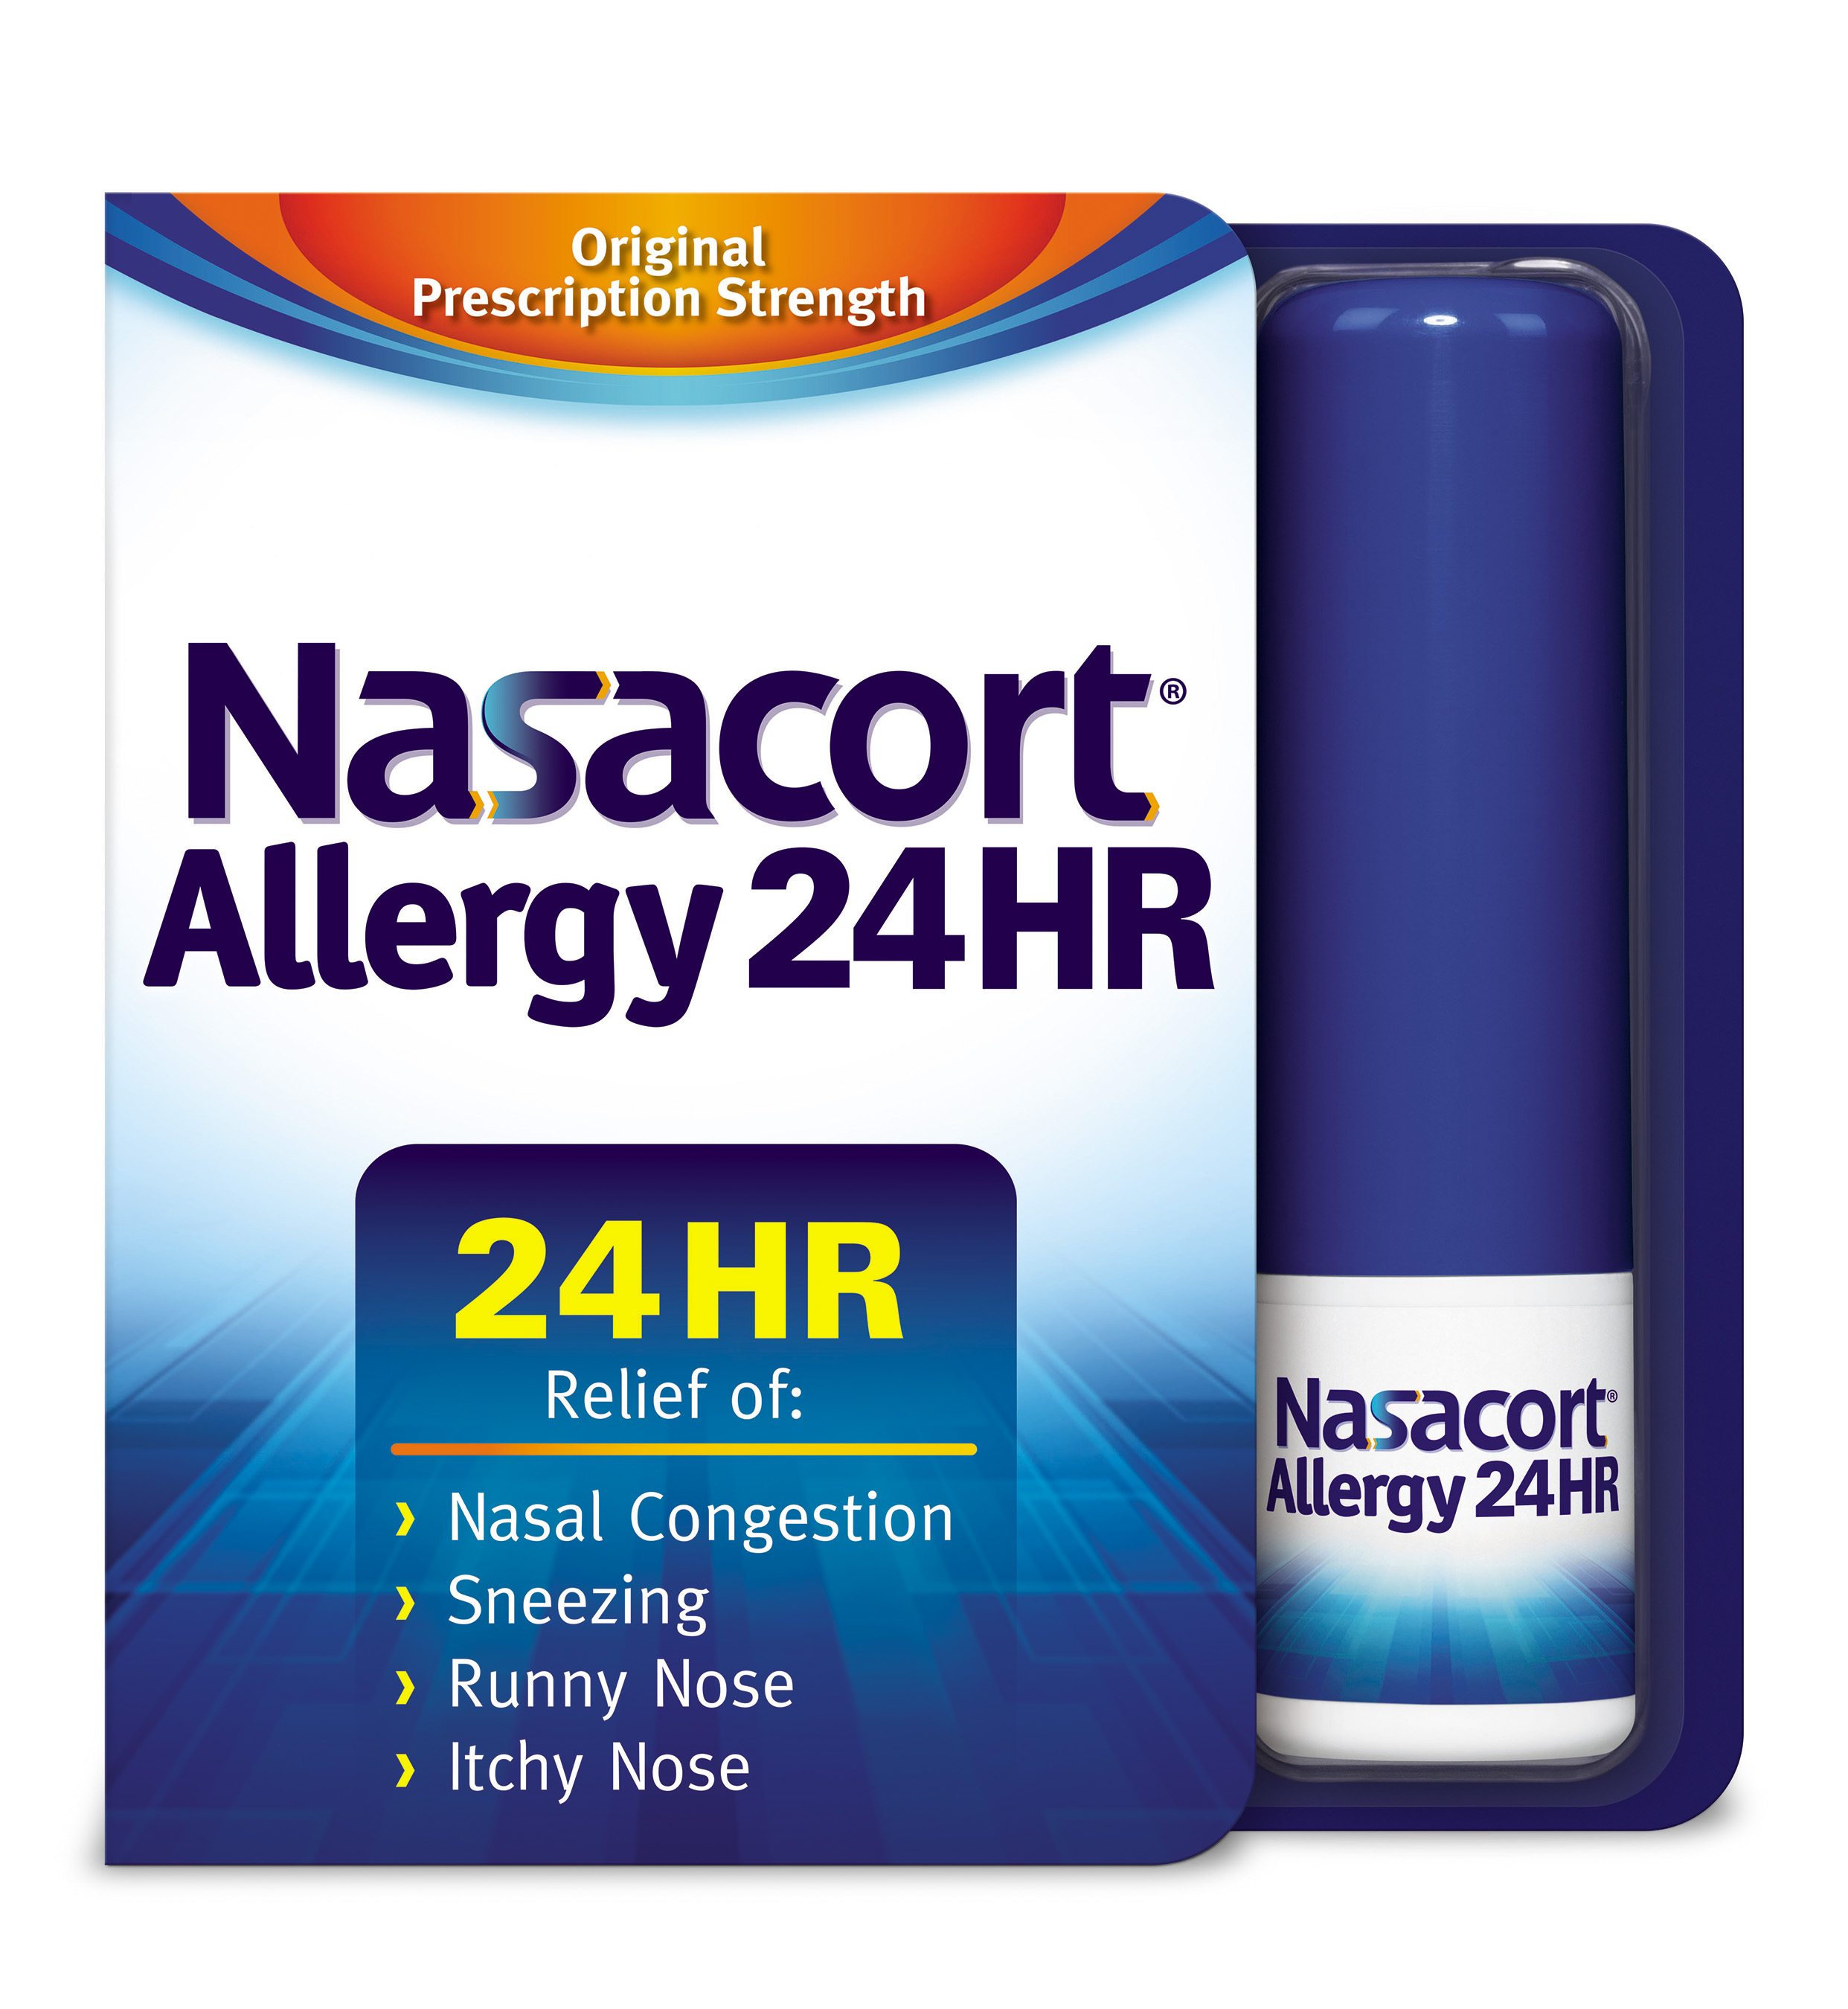 Nasacort Allergy 24HR